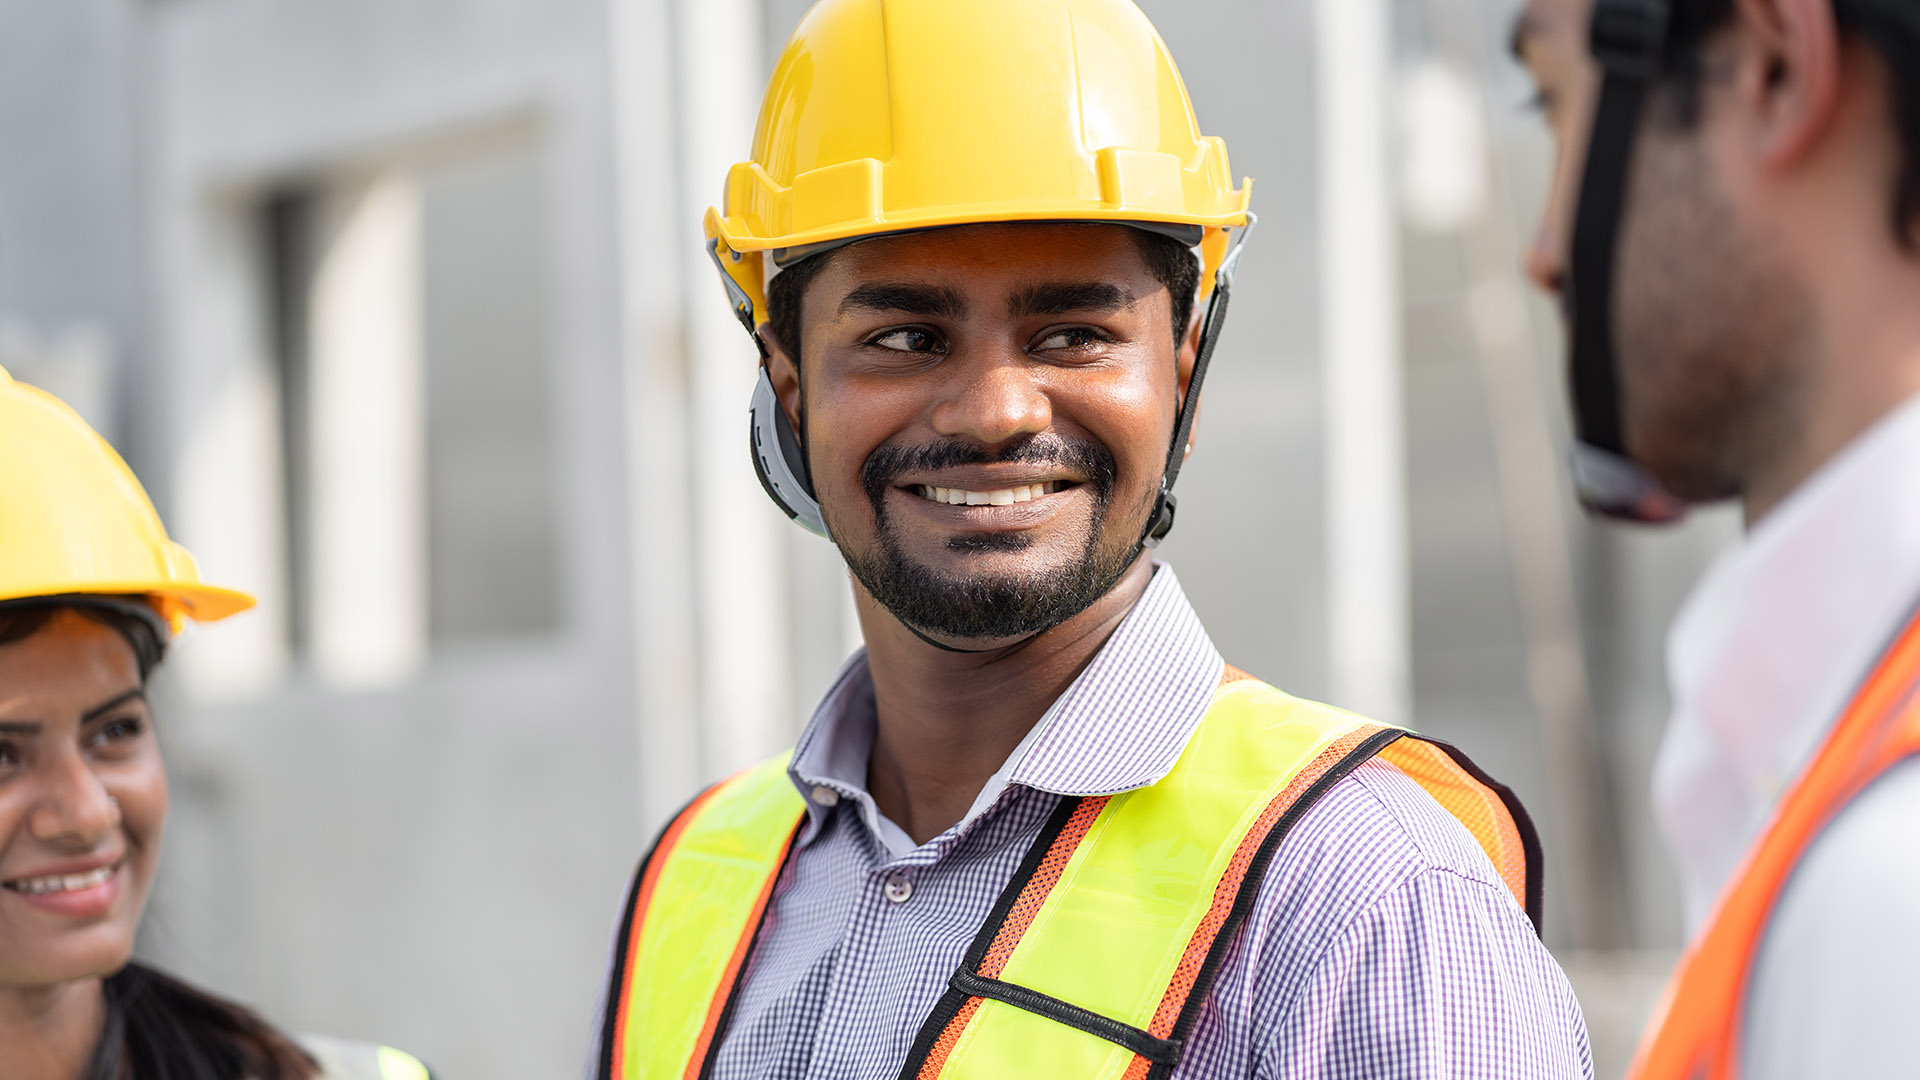 Indian engineer wearing safety helmet